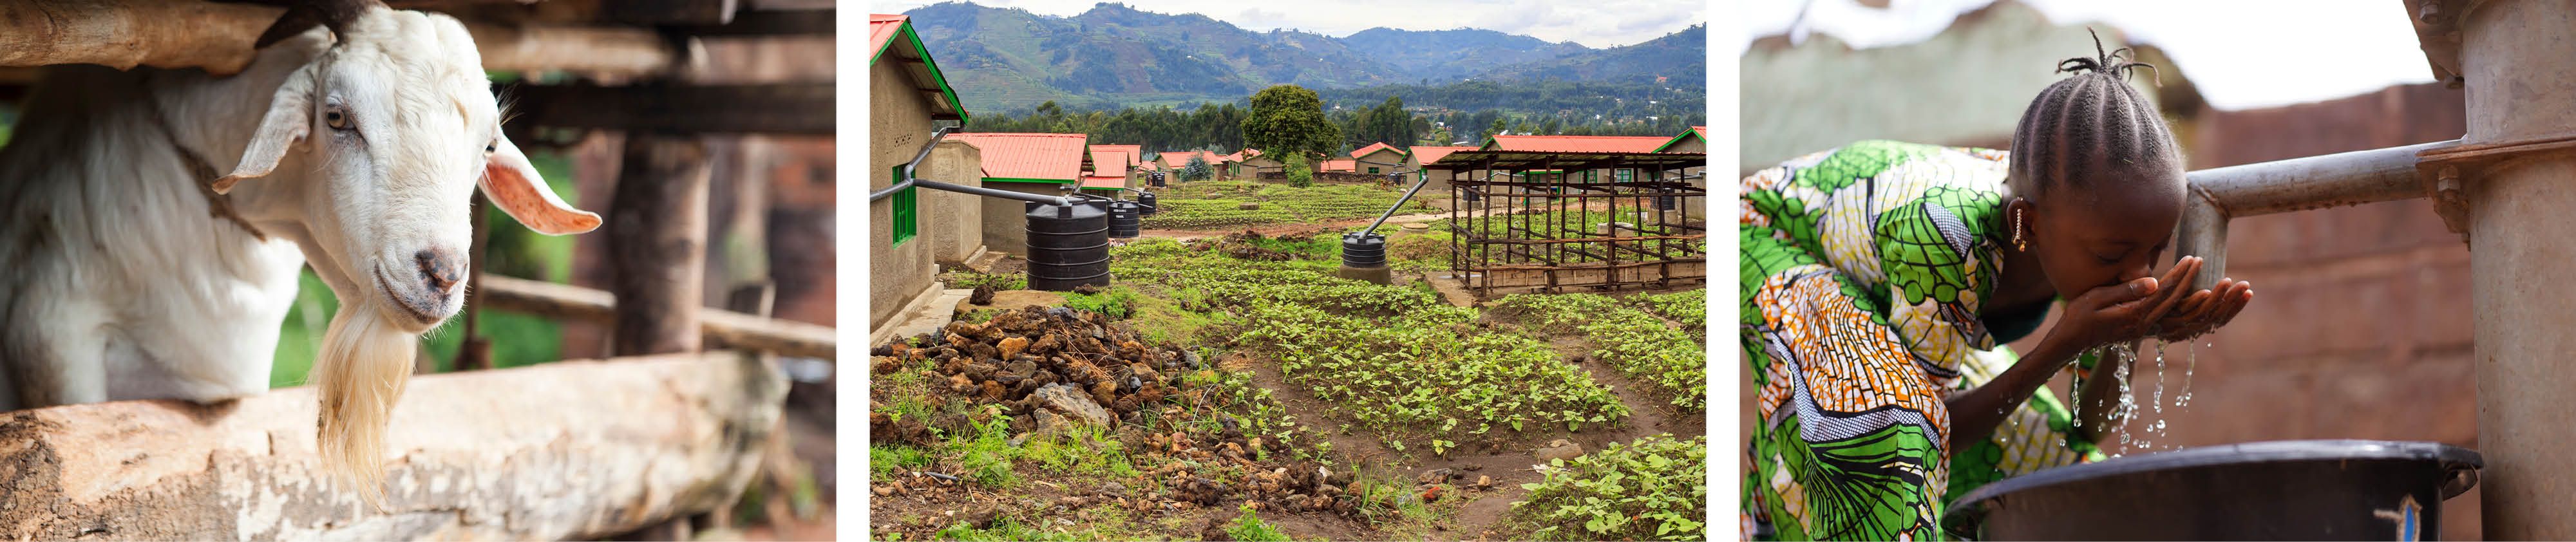 Ziege - Dorft mit kleinen Biogasanlagen - Mädchen trinkt sauberes Wasser